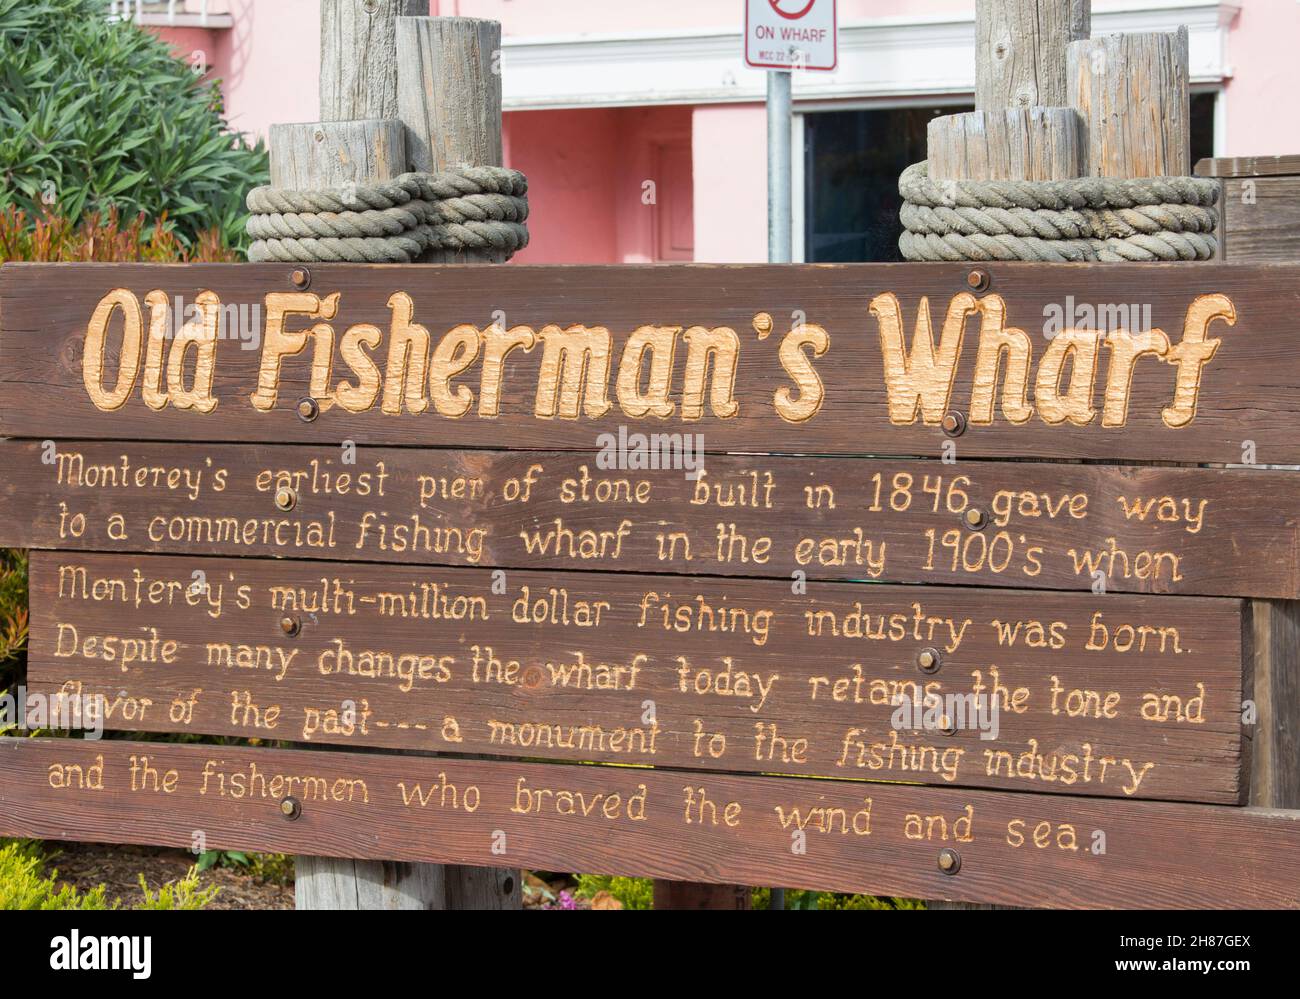 Monterey, California, Estados Unidos. Sencillo cartel de madera que marca la entrada al histórico Old Fisherman's Wharf. Foto de stock